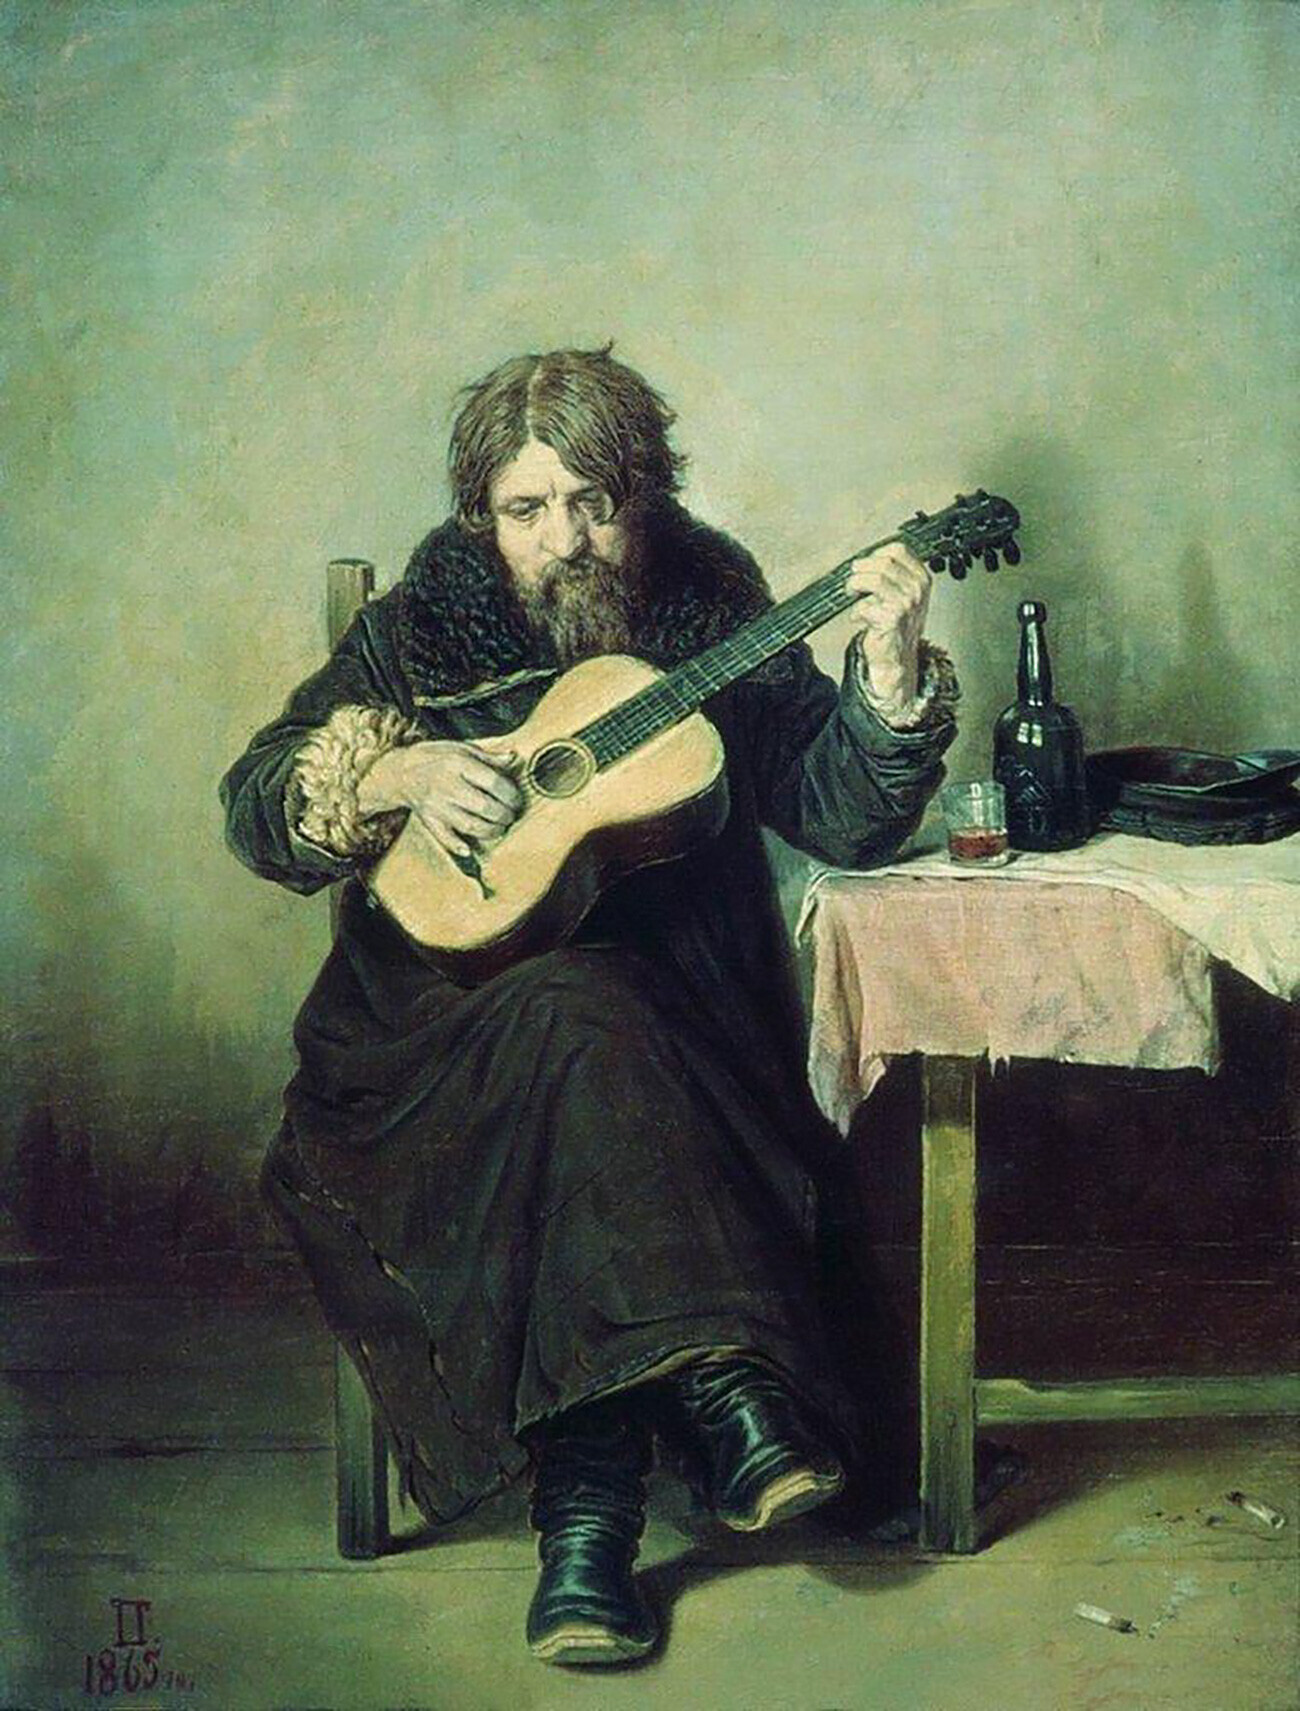 Vassíli Perov, “Guitarrista Solitário”, 1865.